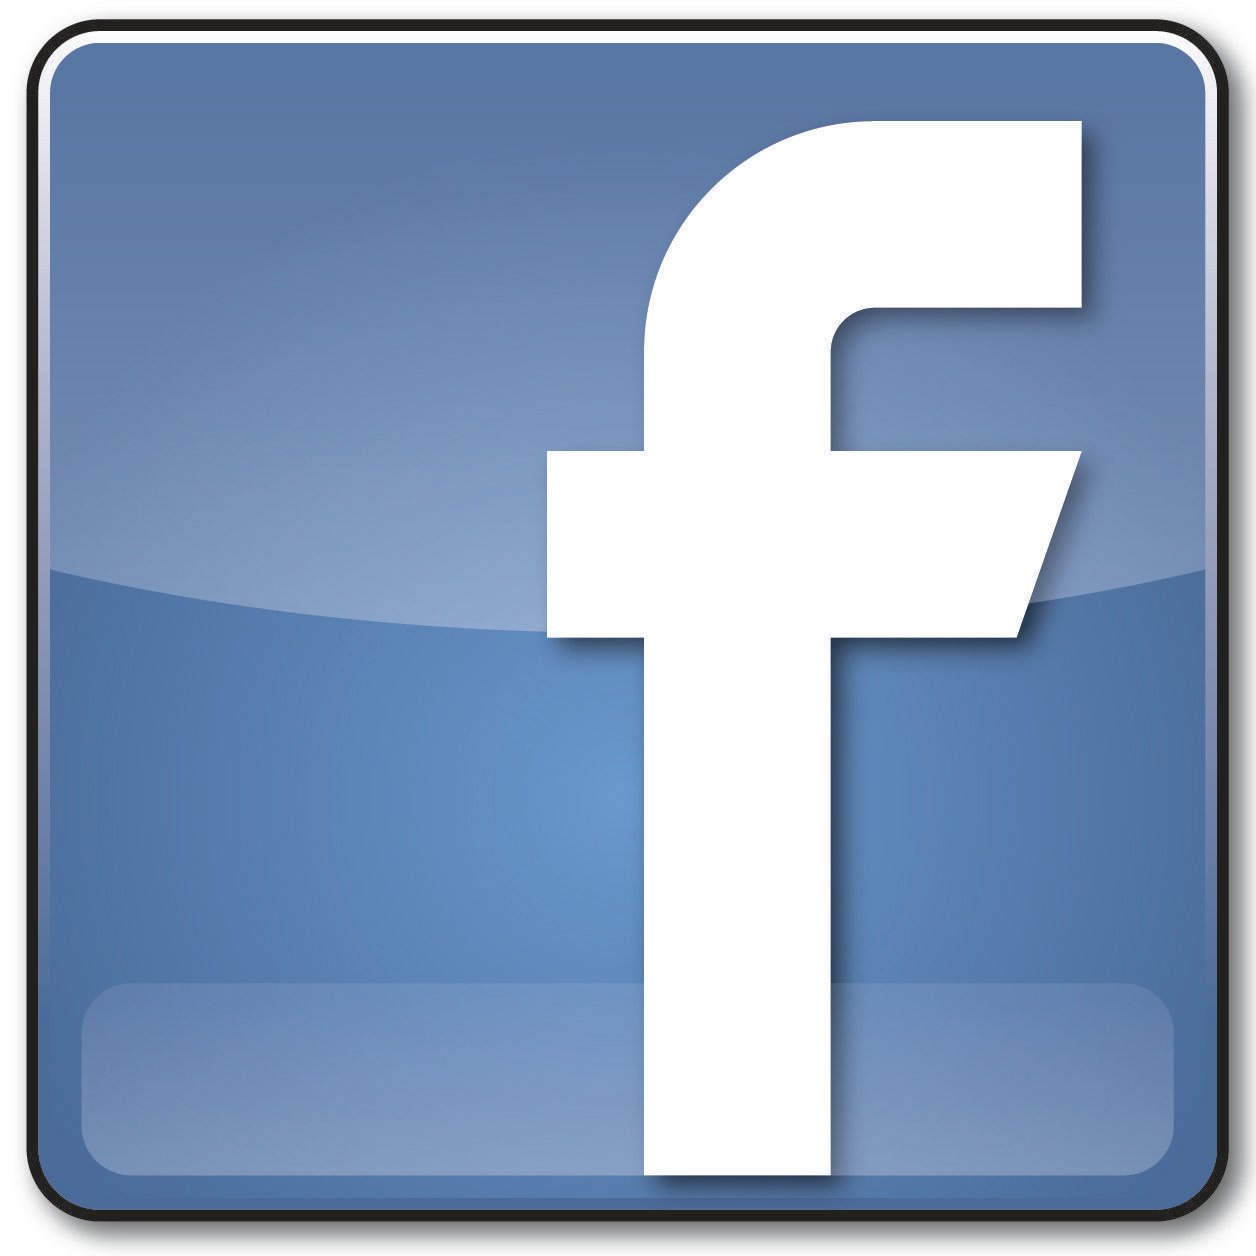 Fackbook Logo - Facebook Logo - Logo Pictures